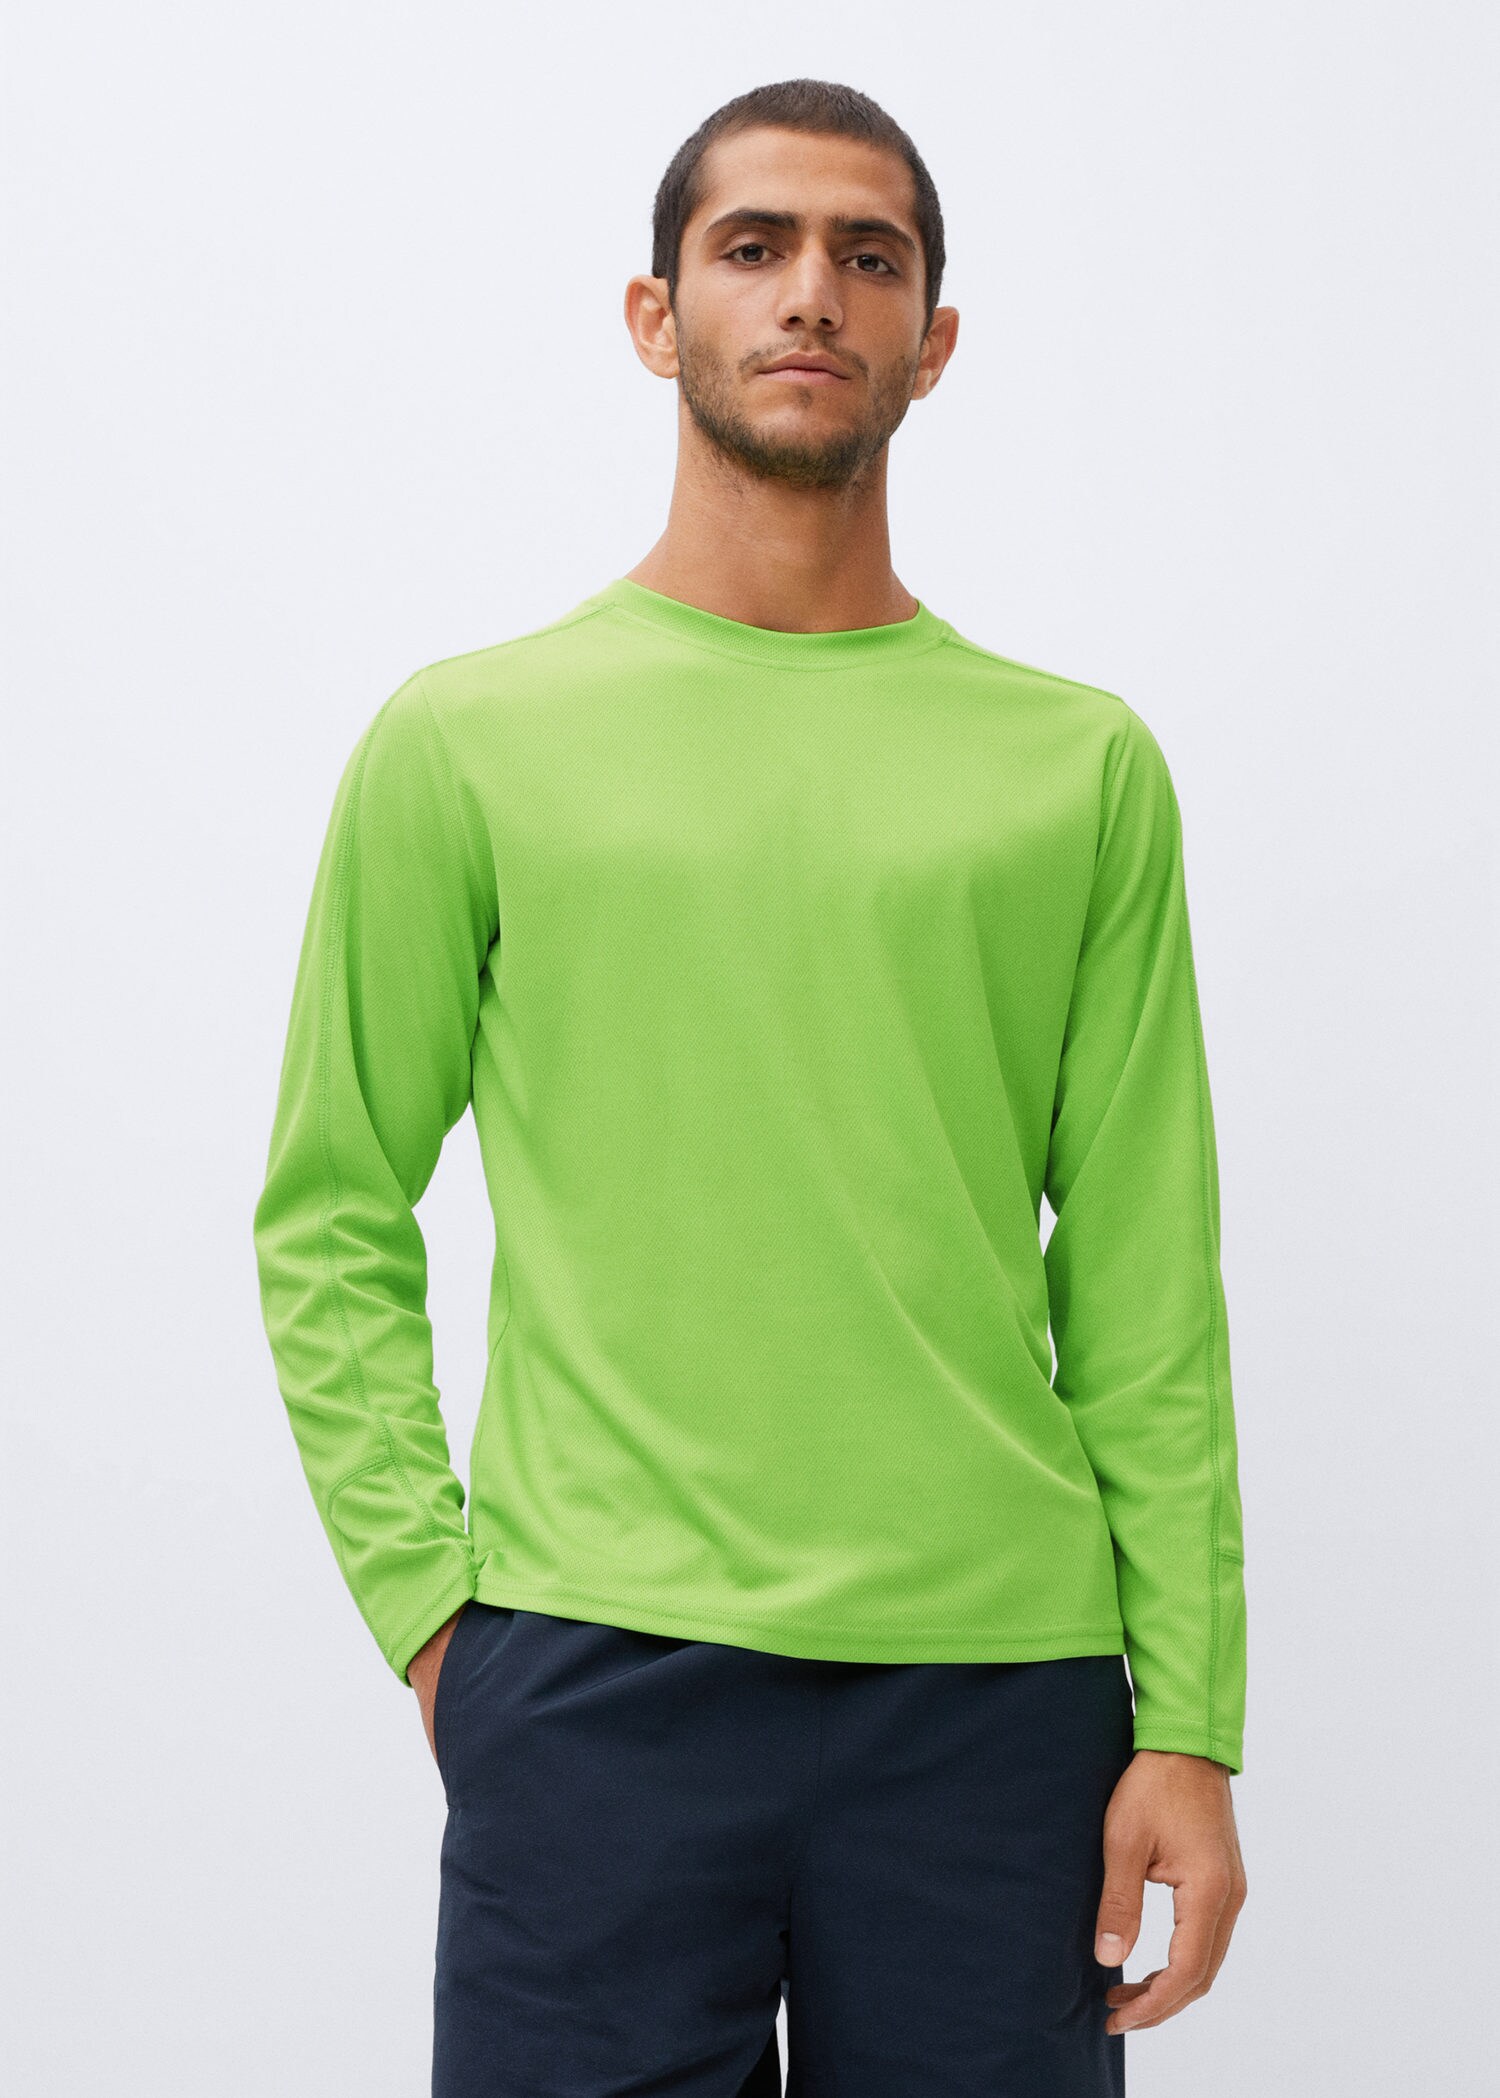 Las mejores ofertas en Camiseta verde neón